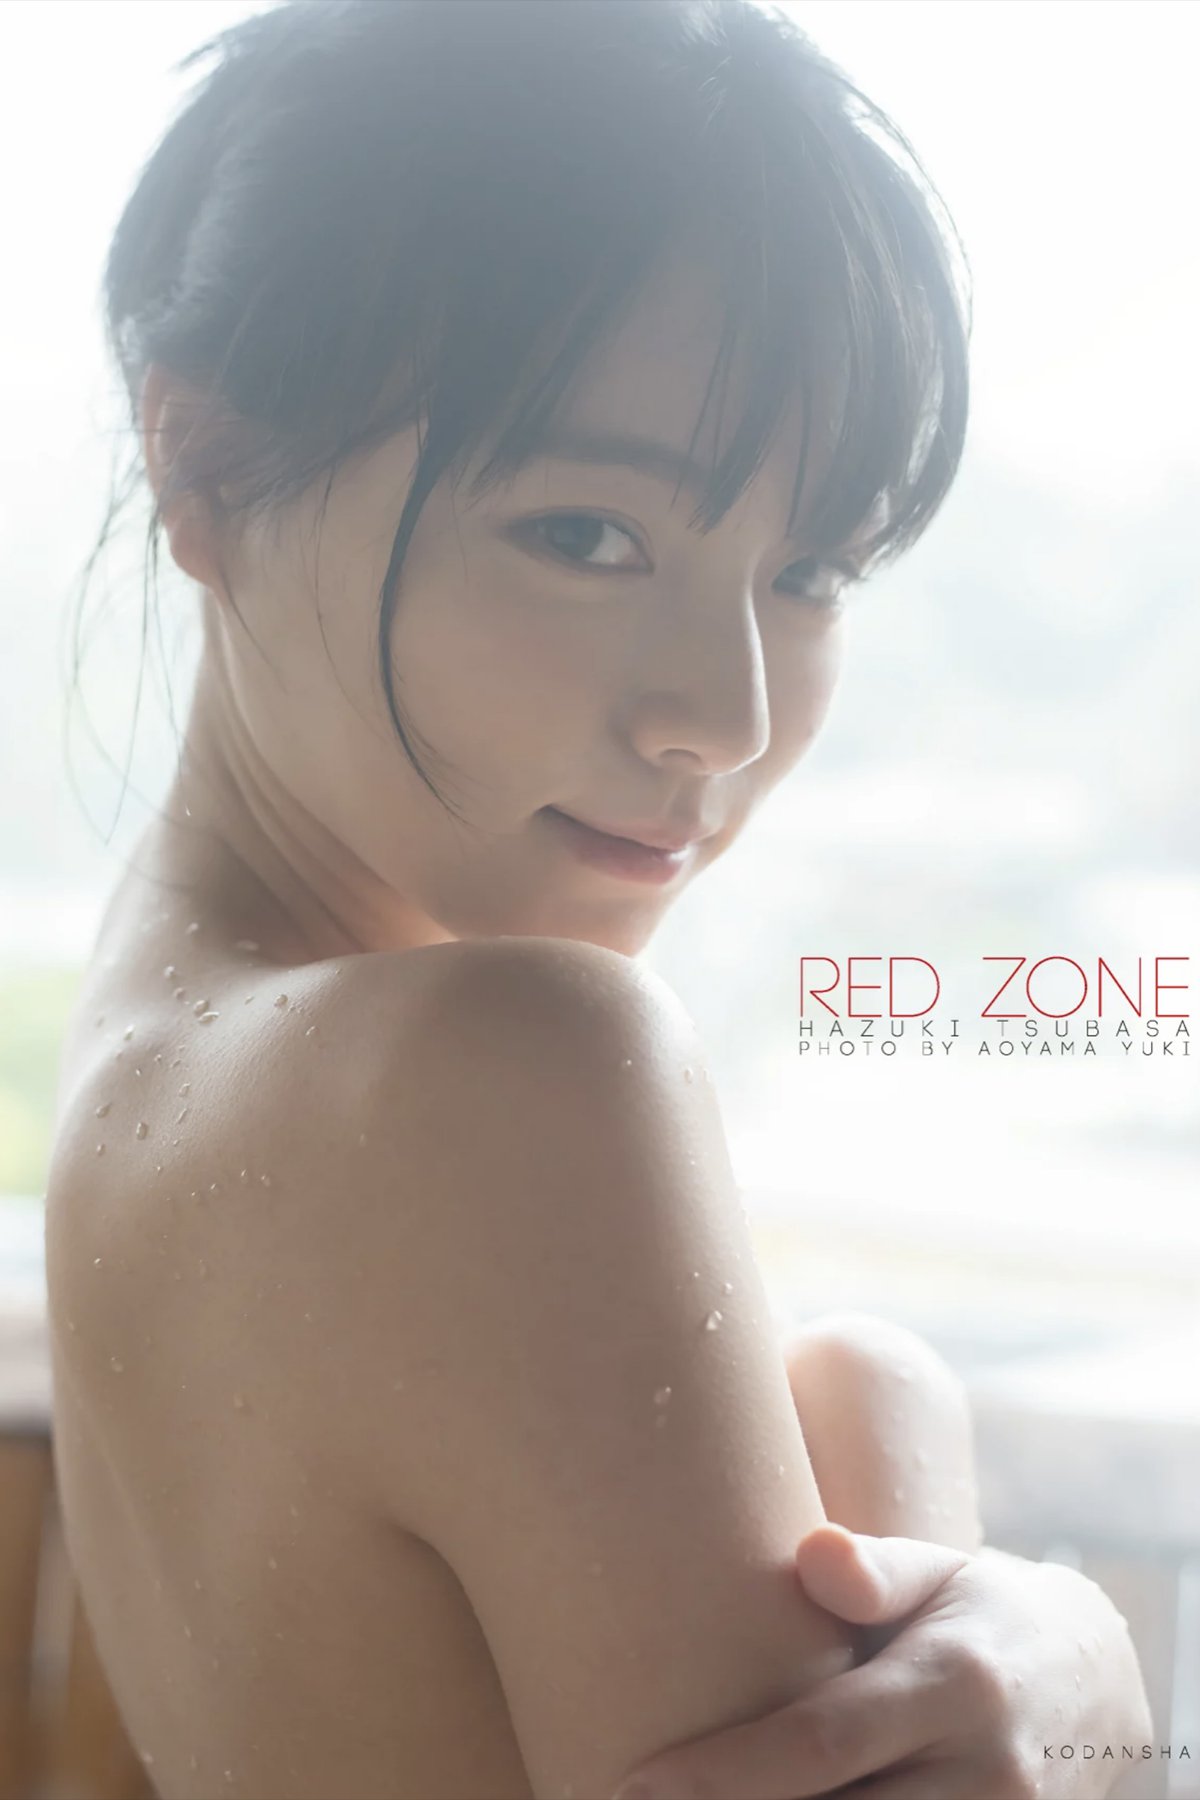 Photobook Tsubasa Hazuki 葉月つばさ – RED ZONE 2020-08-31